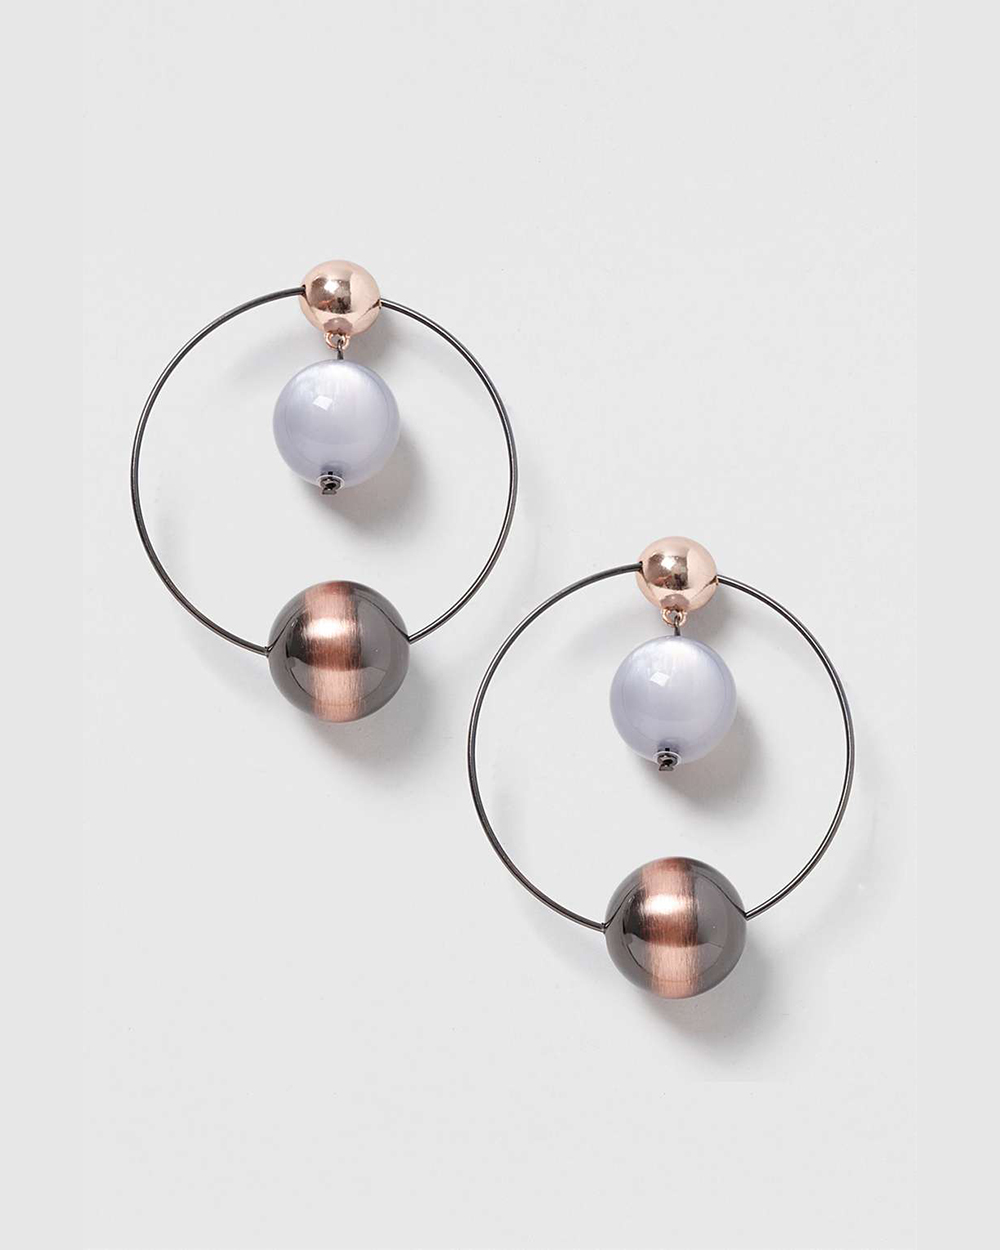 Topshop earrings, $, by Topshop.